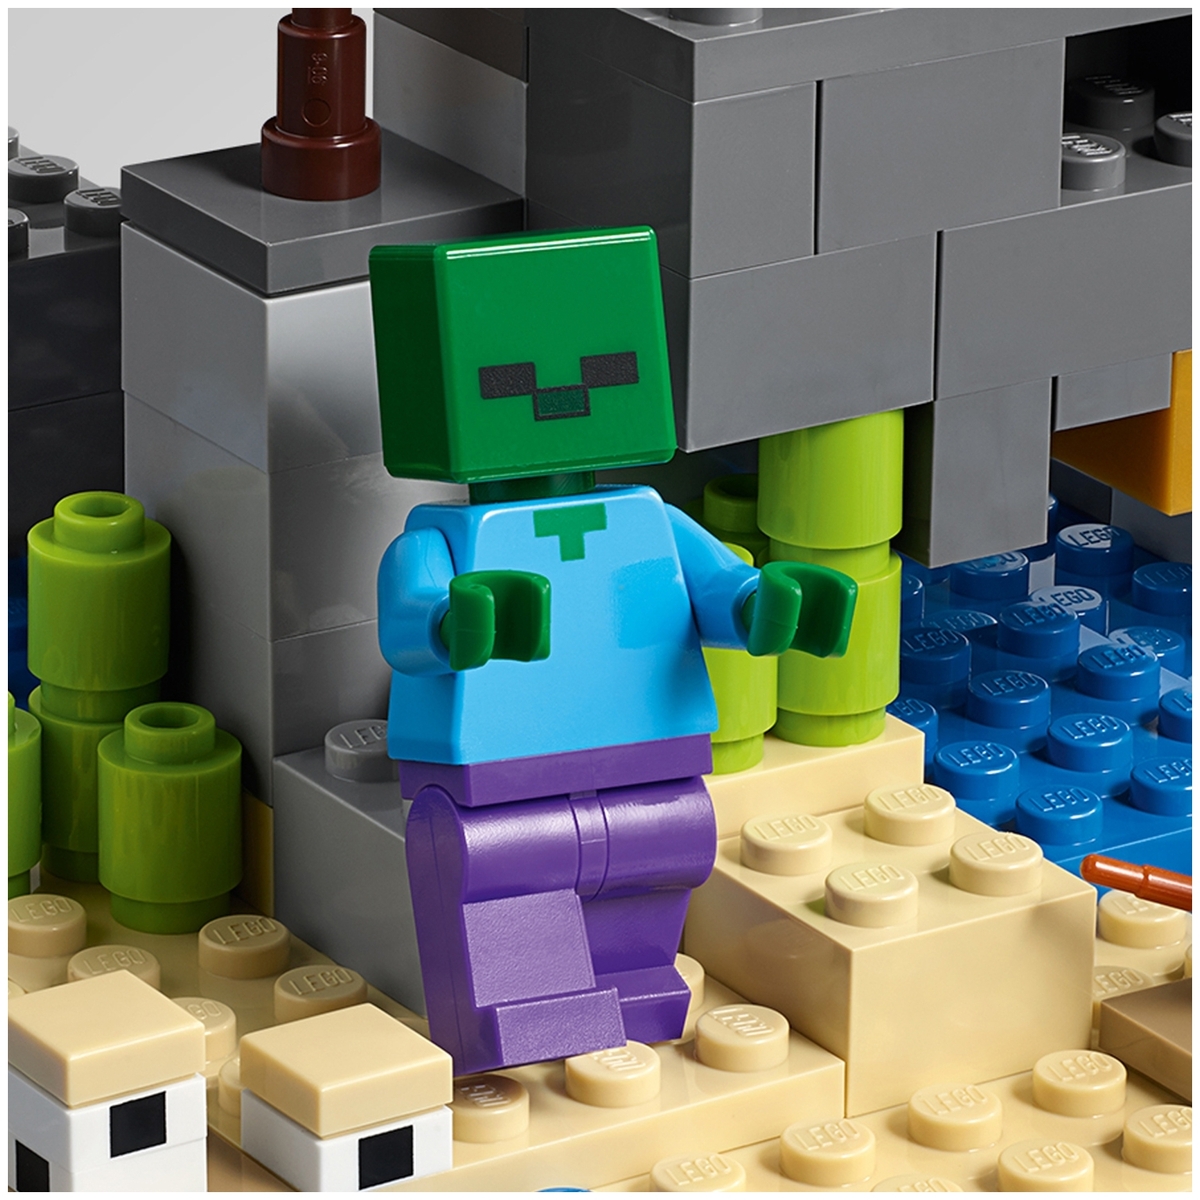 Конструктор LEGO 21152 Minecraft Приключения на пиратском корабле Казахстан